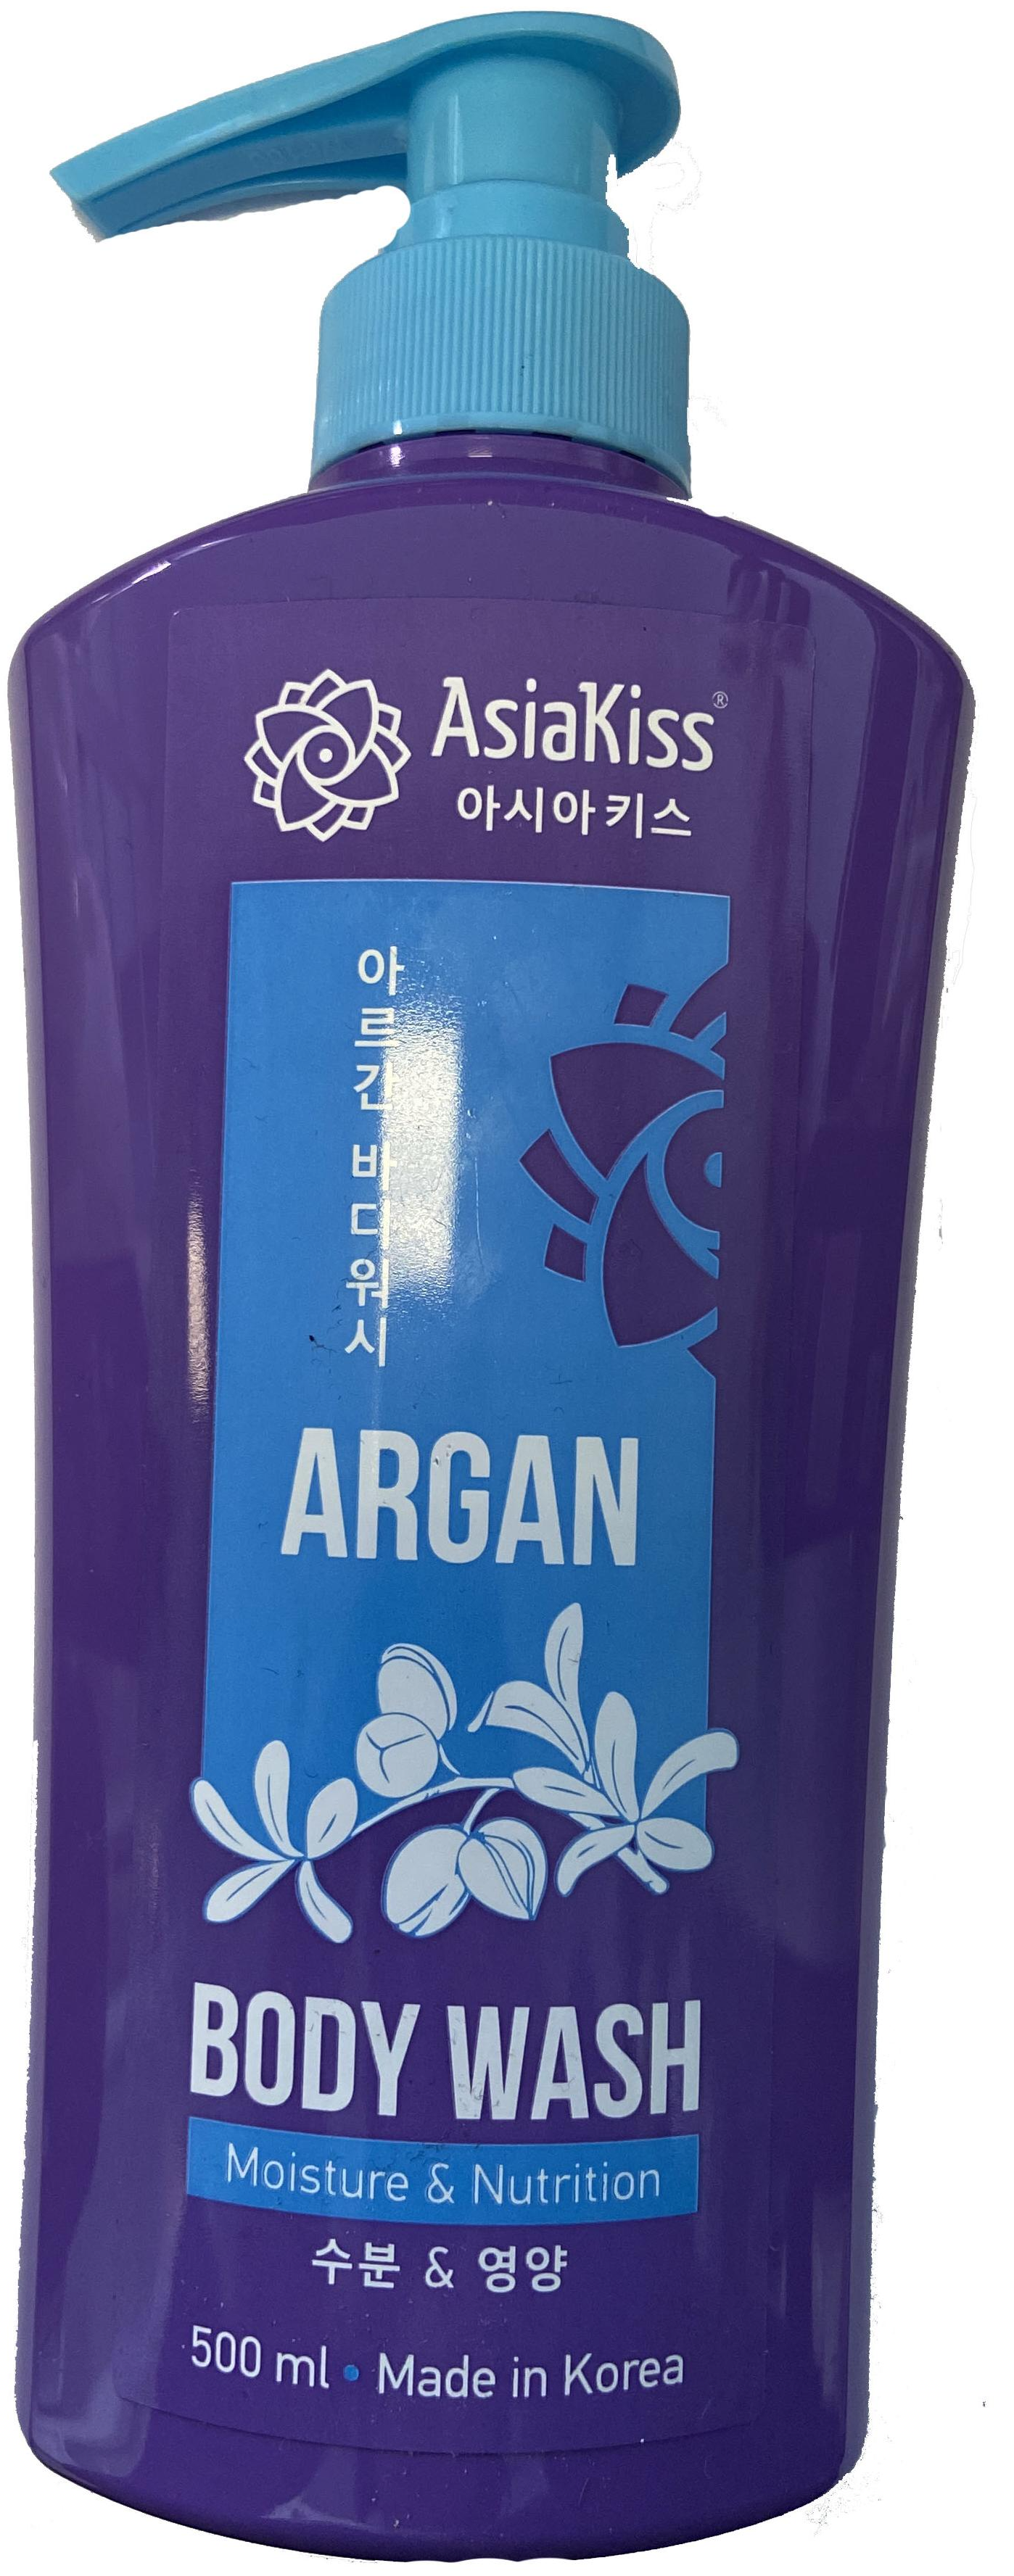 AsiaKiss Argan Body Wash Moisture & Nutrition Гель для душа с маслом арганы Увлажнение и питание 500 мл